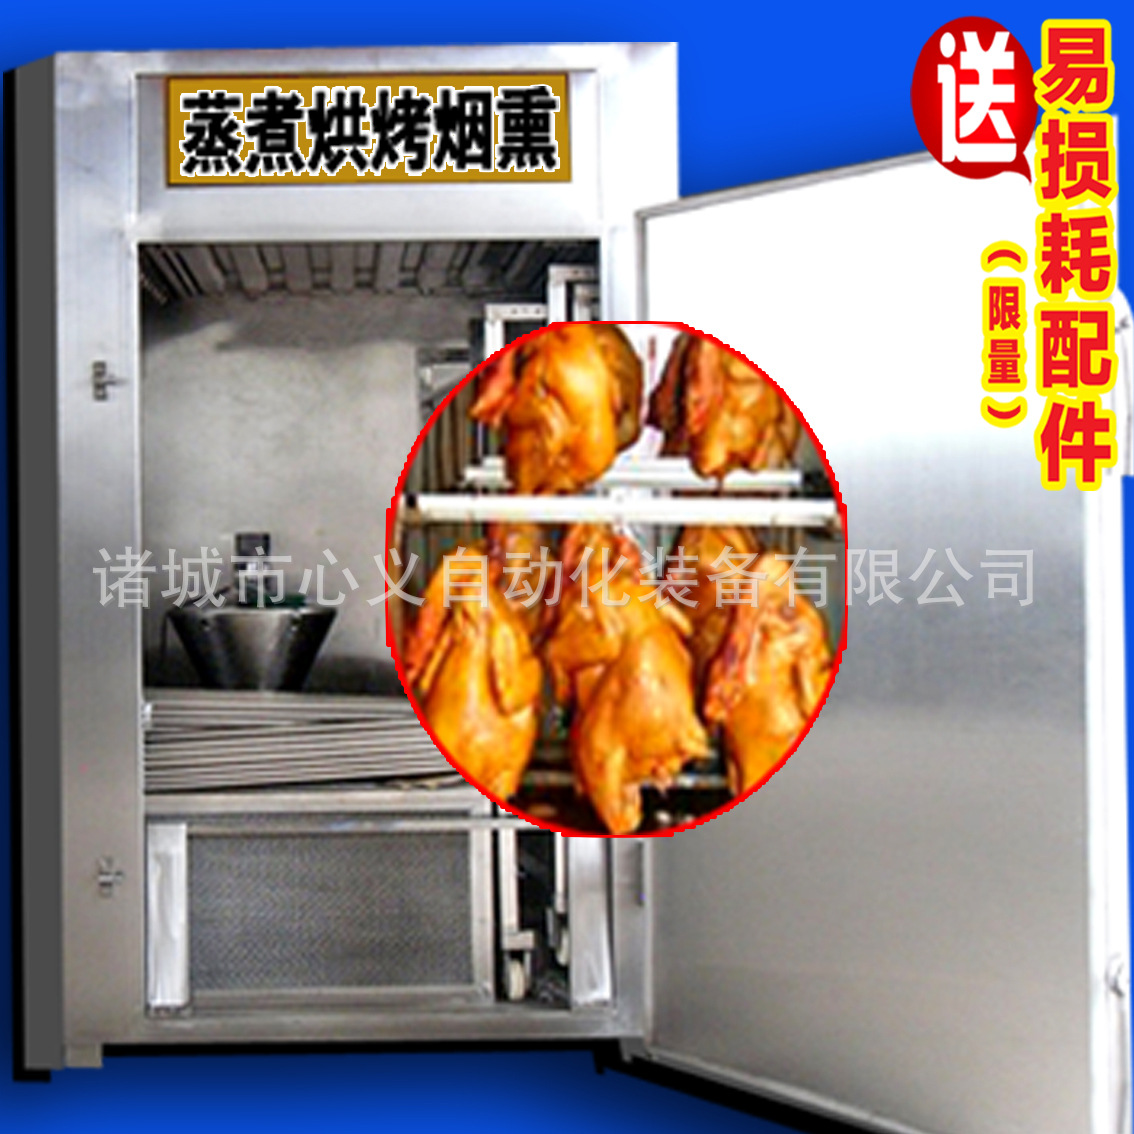 全自动烟熏炉设备 烧猪鸡鸭 烤地瓜电热扒炉 铁板烧设备商用